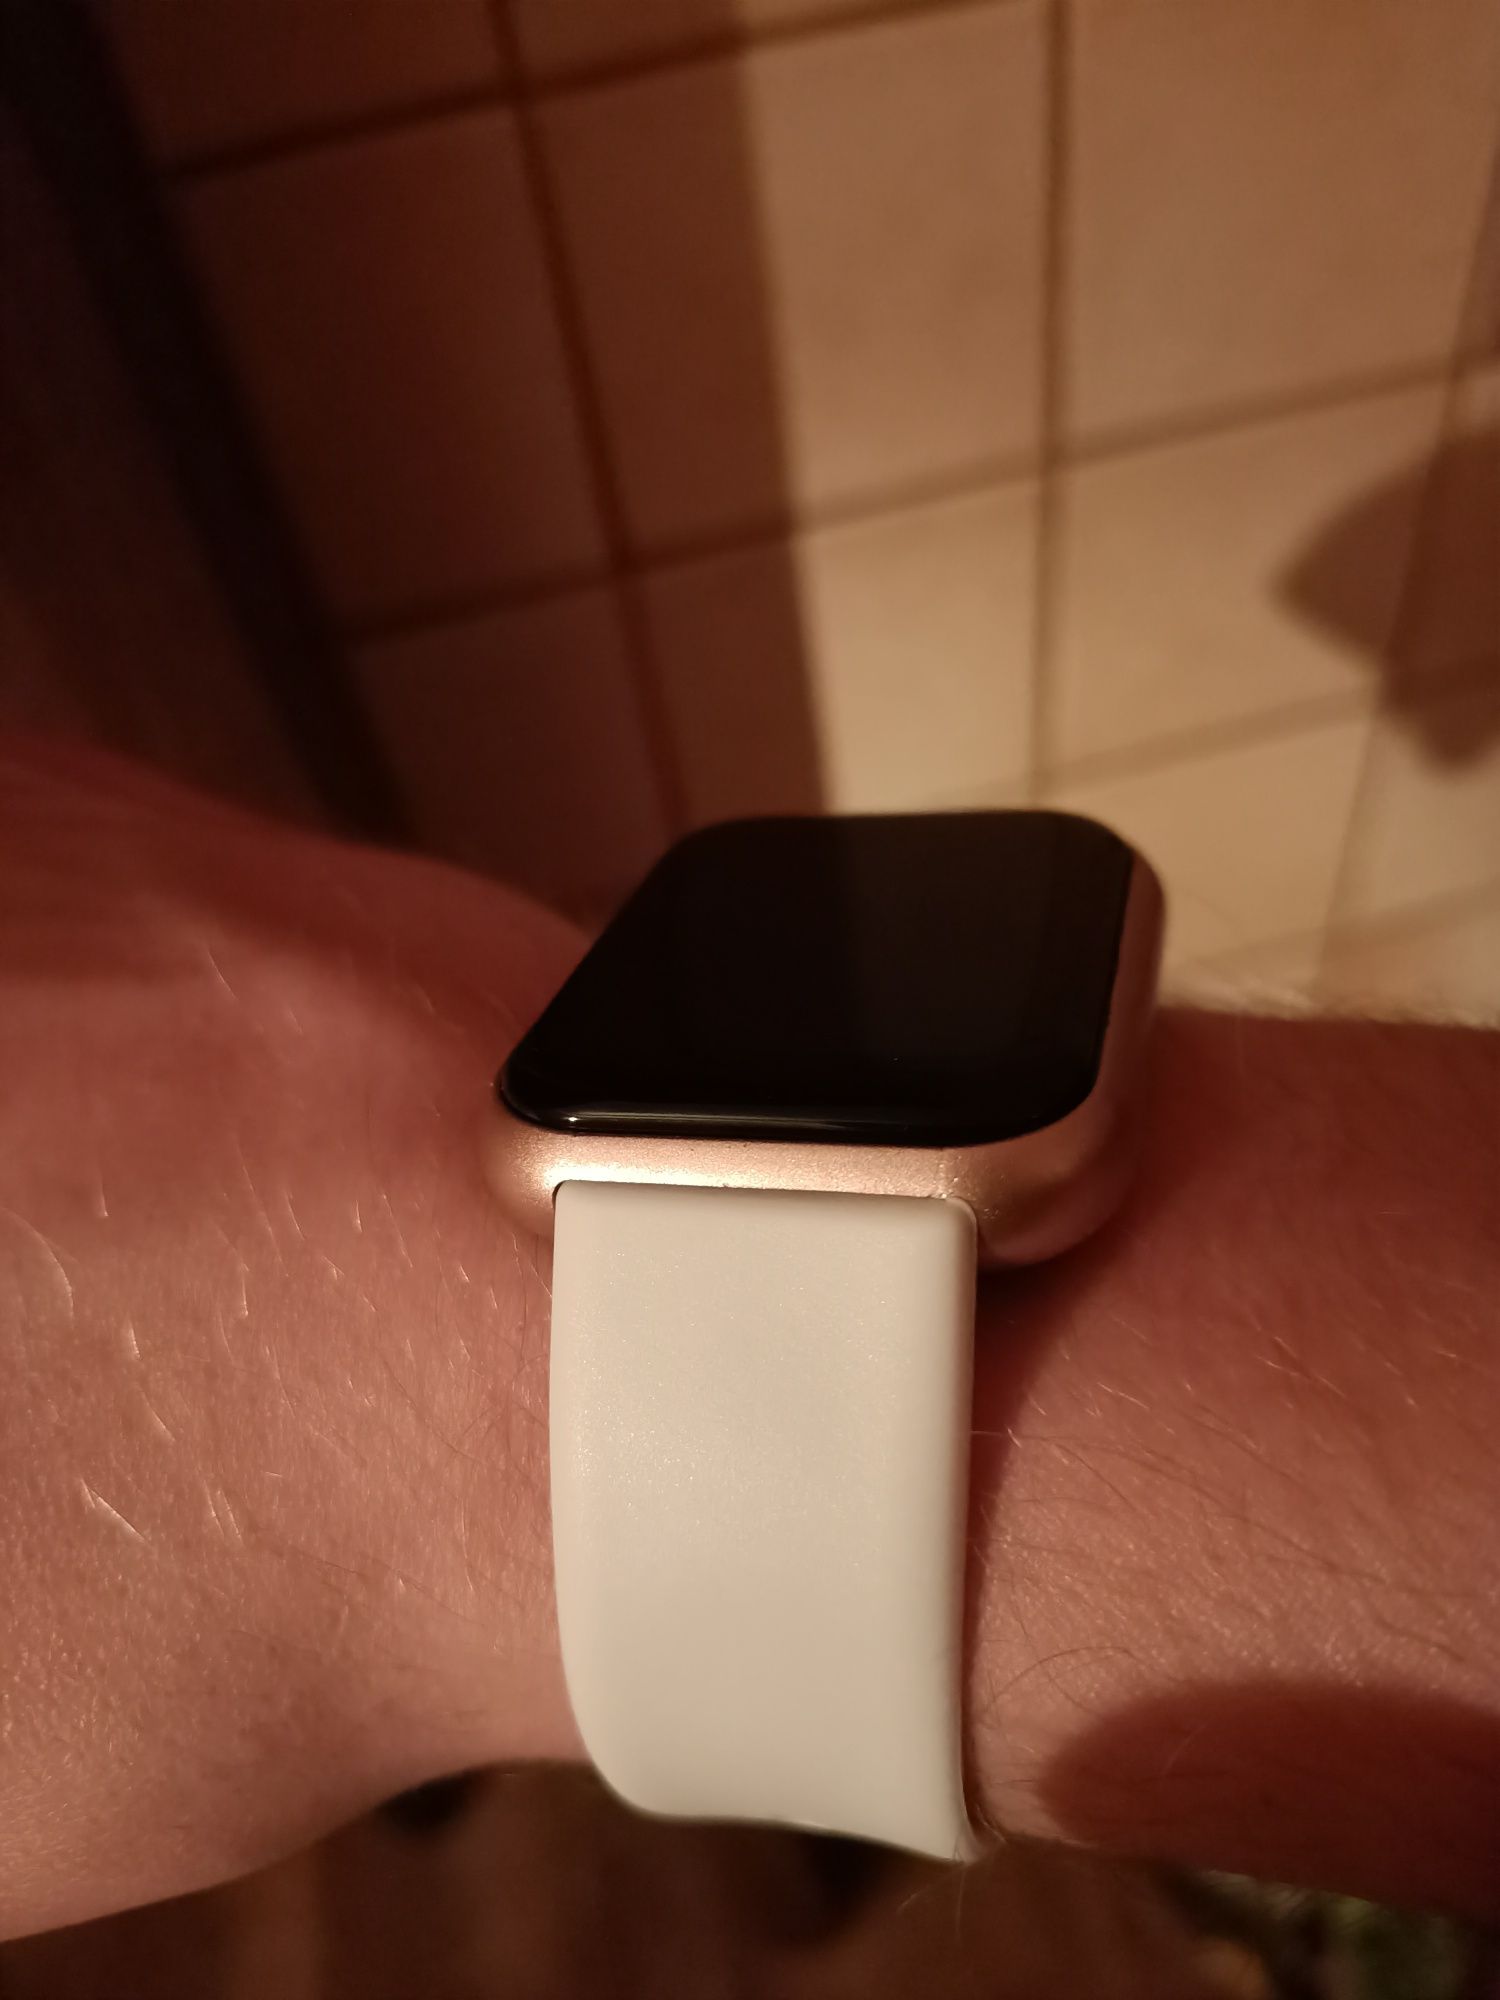 Nowy zegarek Smartwatch, damski/męski. Tętno,kroki, powiadomienia